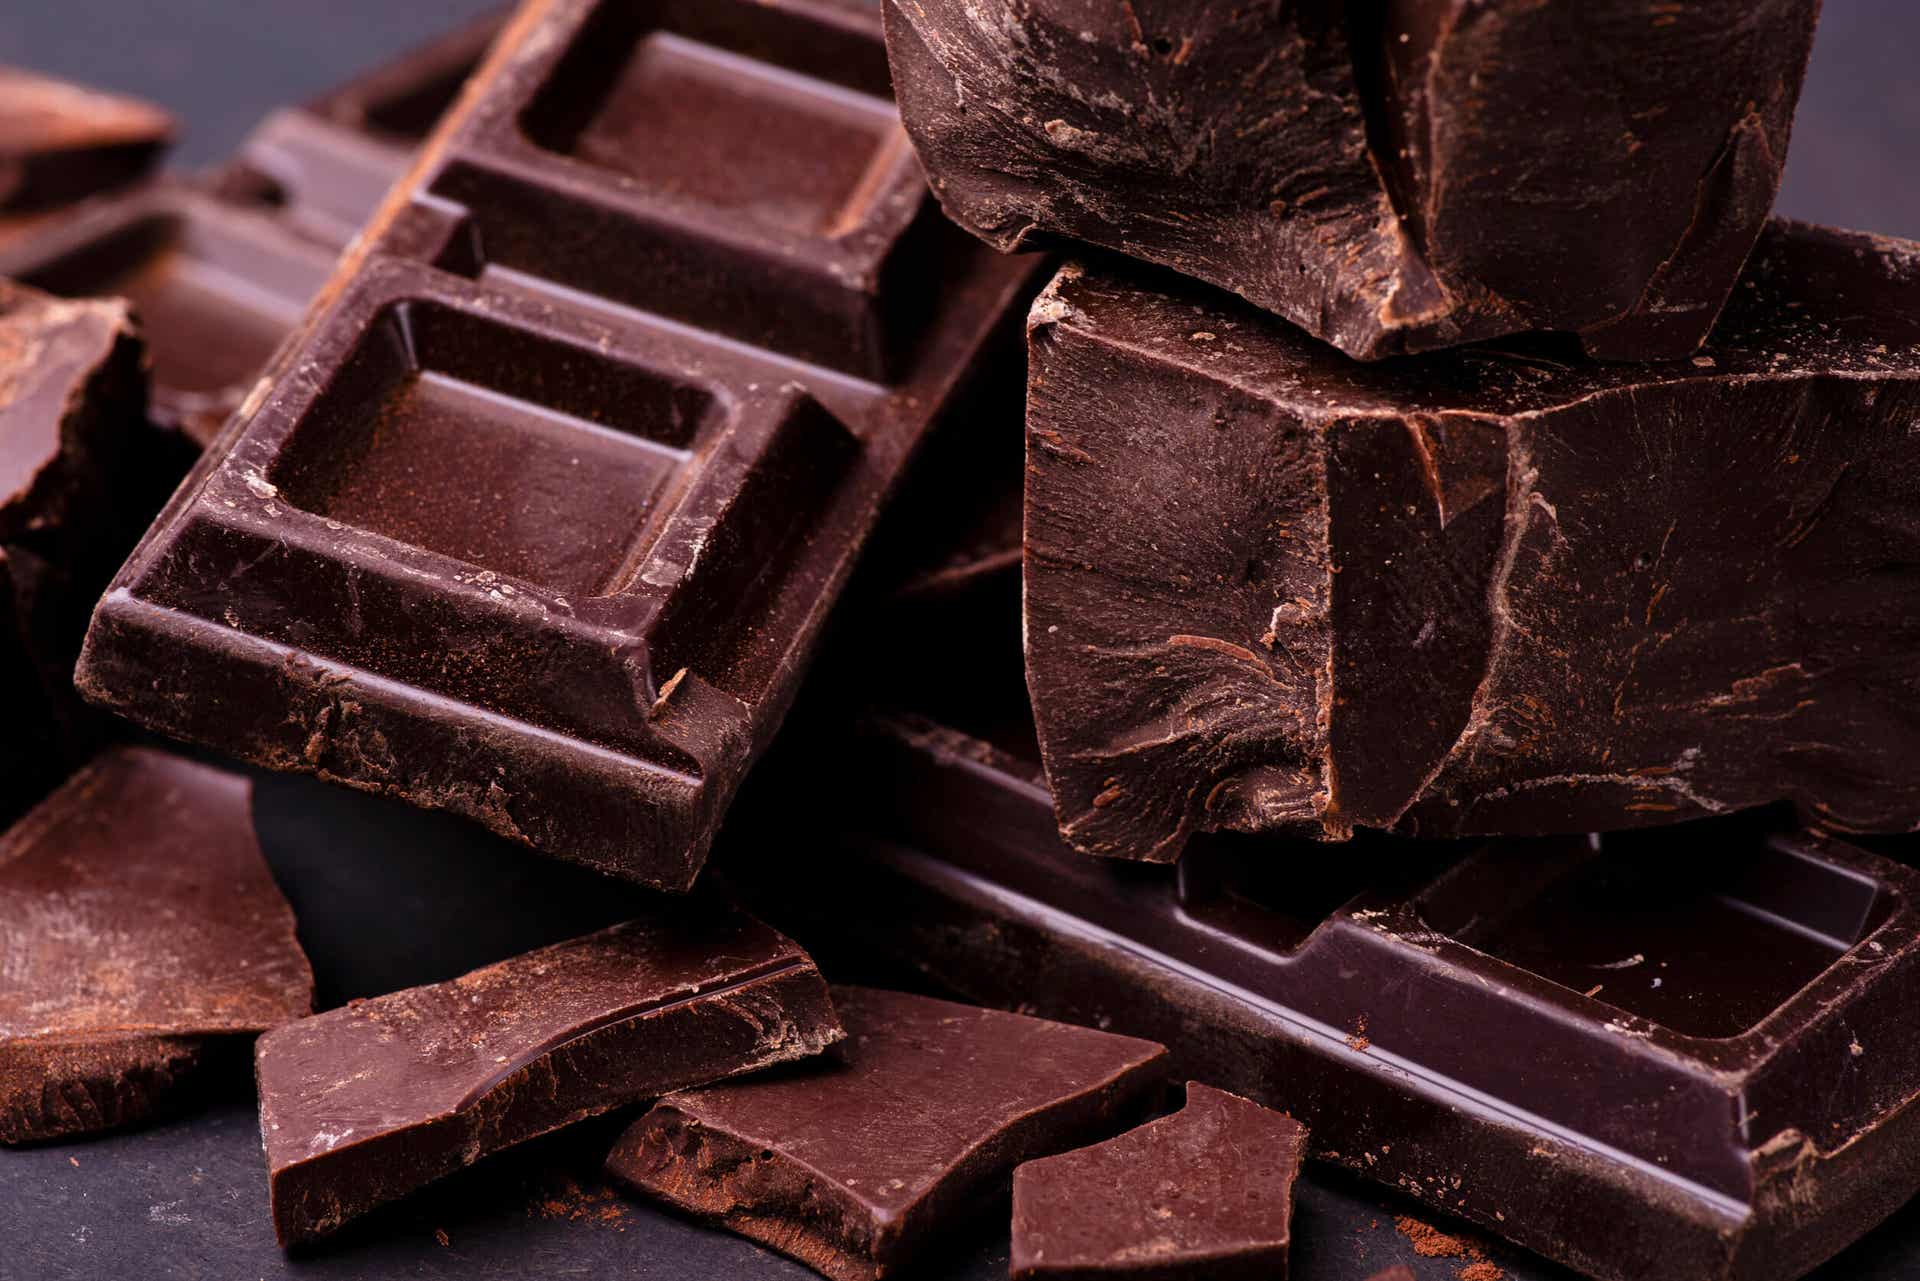 Recommandations : Pourquoi manger du chocolat ?